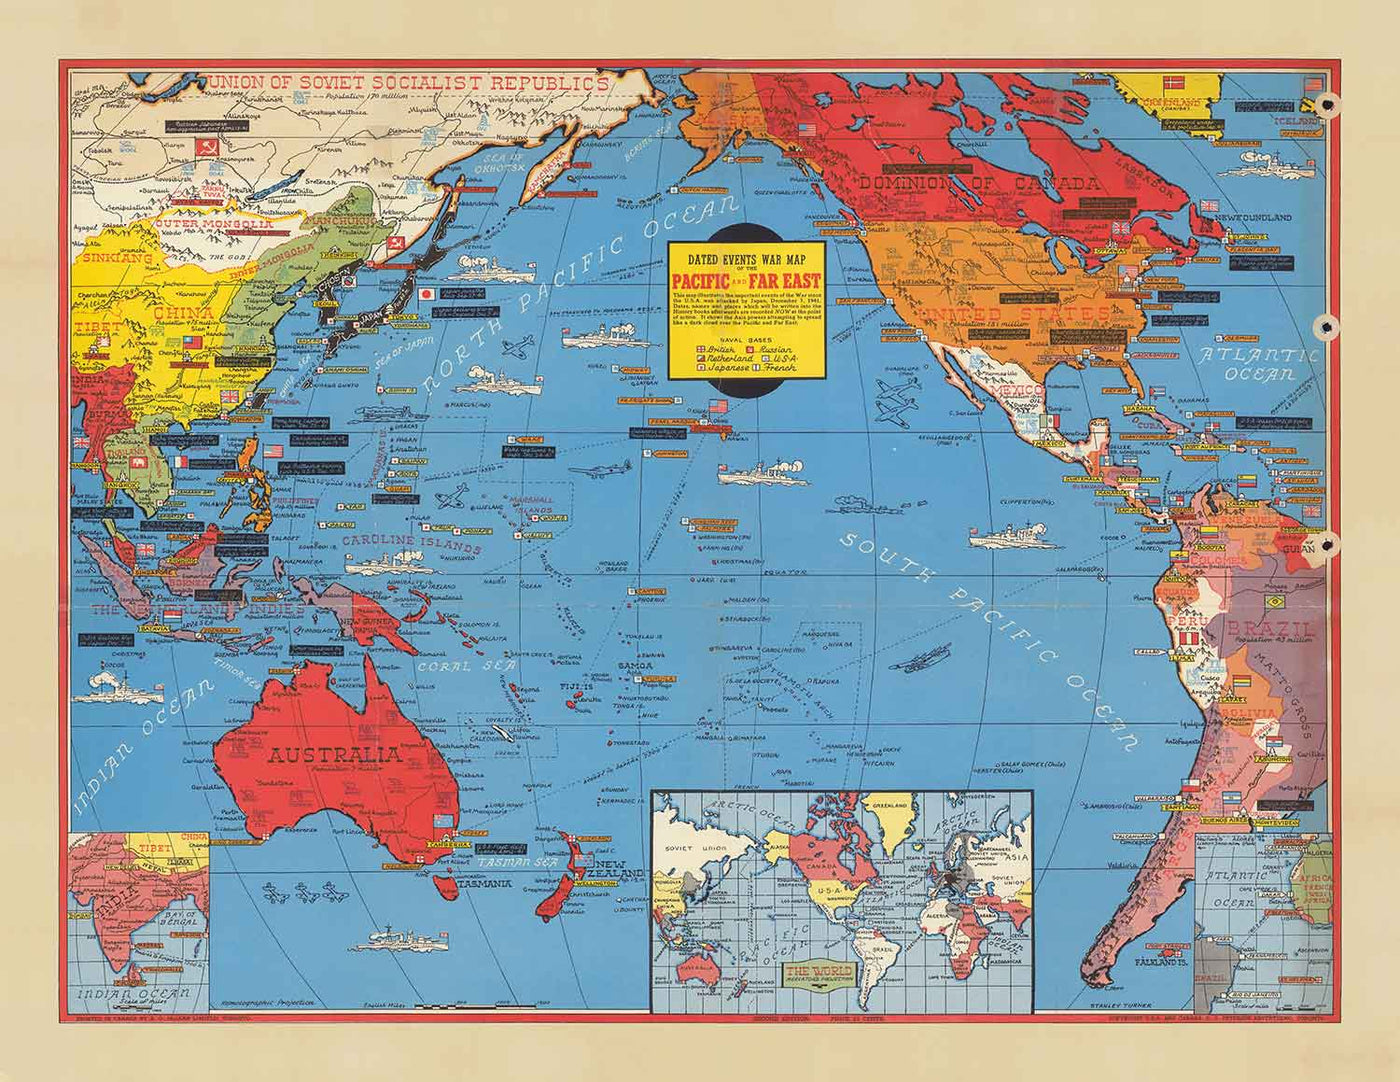 Antiguo mapa de la Segunda Guerra Mundial del Pacífico y el Lejano Oriente en 1942 por Stanley Turner - "Eventos fechados" Japón, EE.UU., Gran Bretaña, Pacífico, URSS